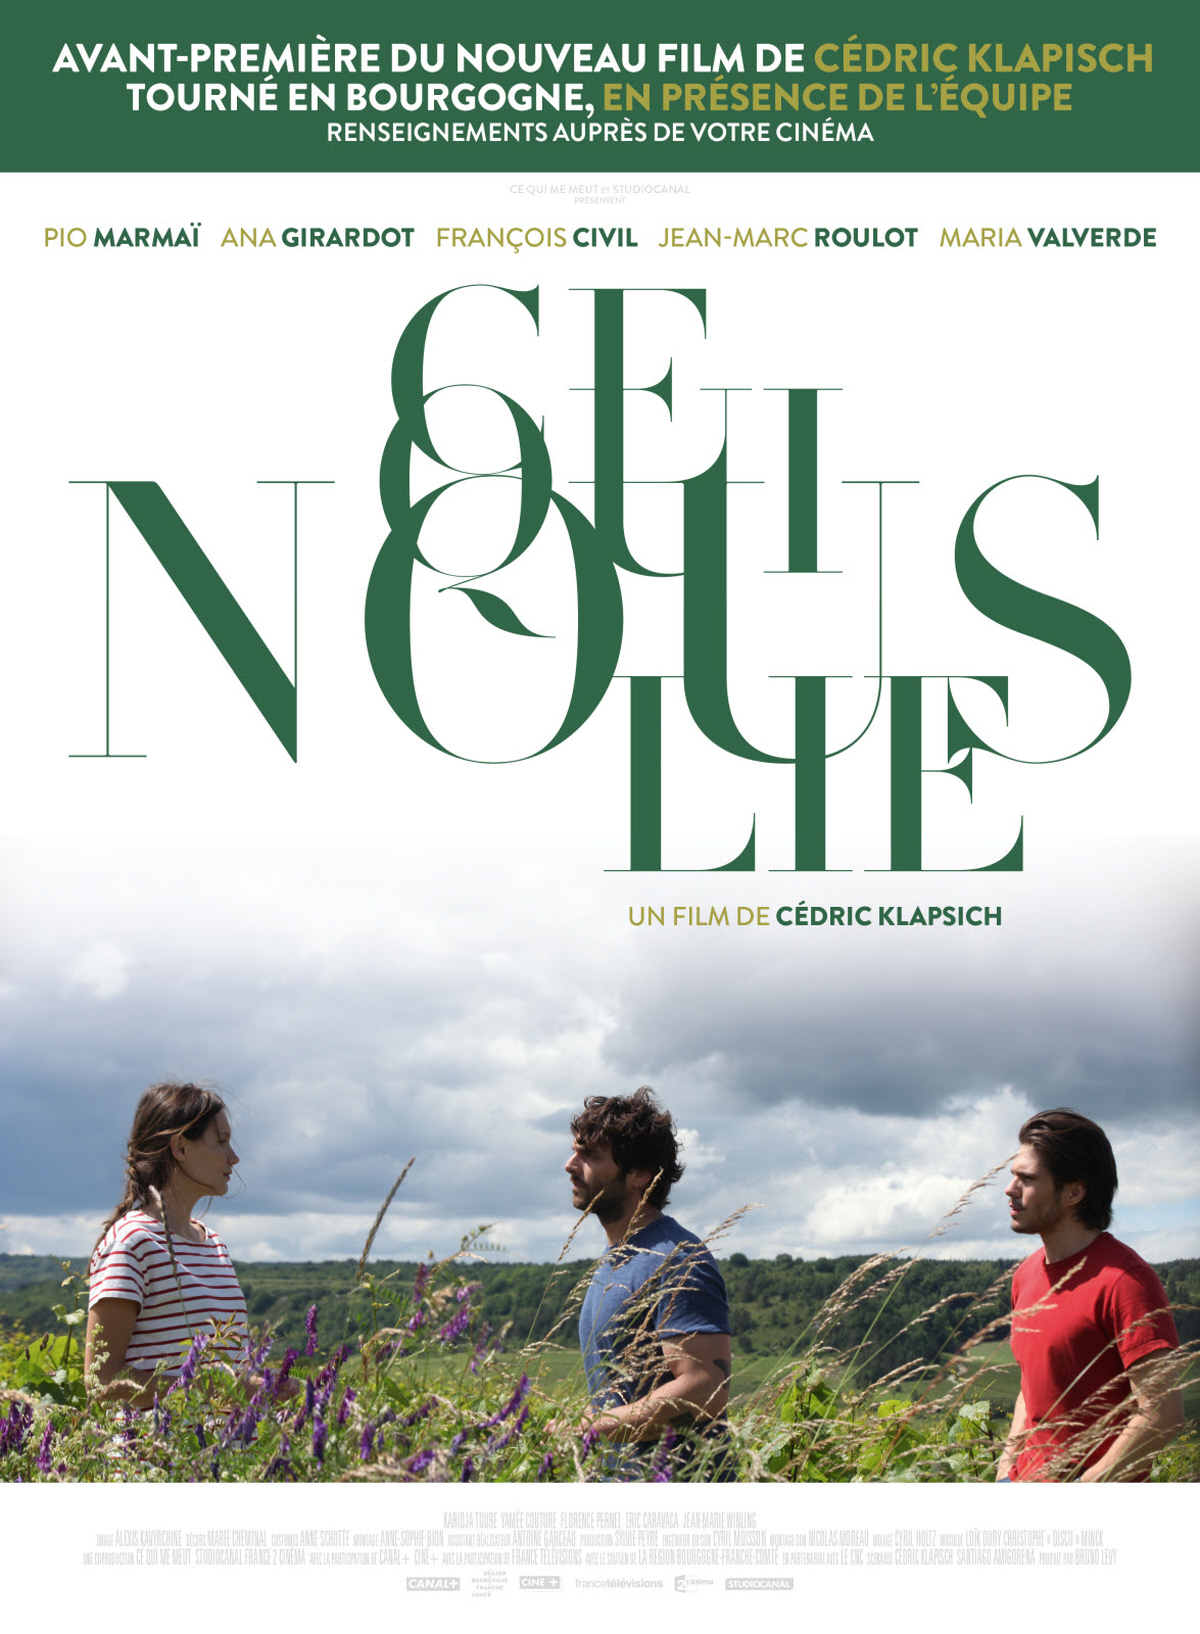 Cinéma : Ce qui nous lie – Sainte-Aurélie